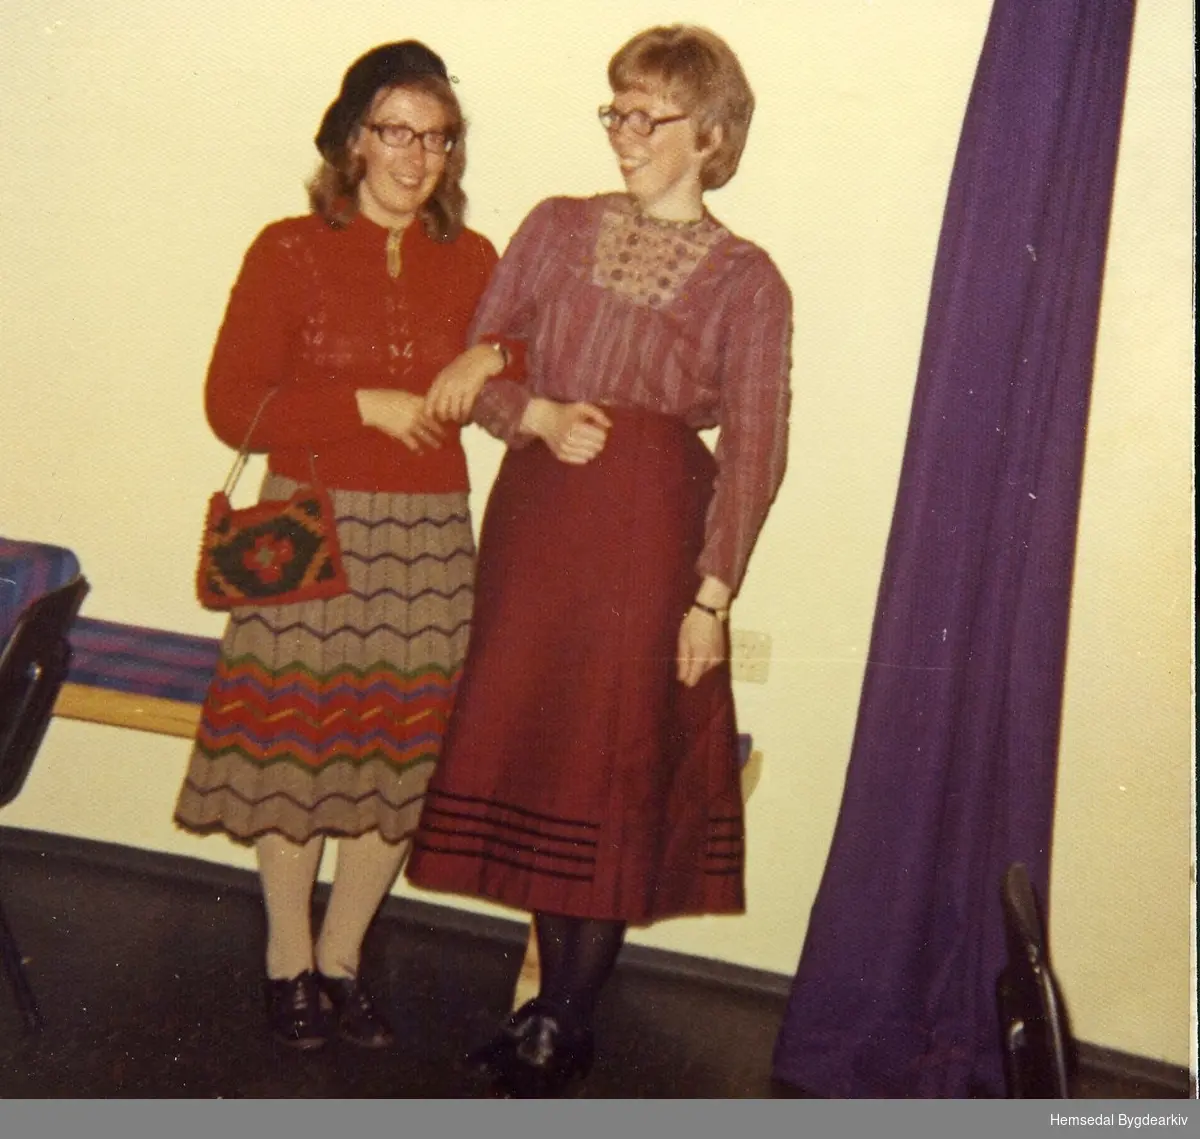 Kostymefest - "Kle deg som i gamle dagar"  i Samhald ungdomslag 1972-73. Festen vart halden på Hemsedal samfunnshus.
Frå venstre: Margit H. Ulsaker, fødd 1944, og Kari Bjerkheim, fødd 1947.